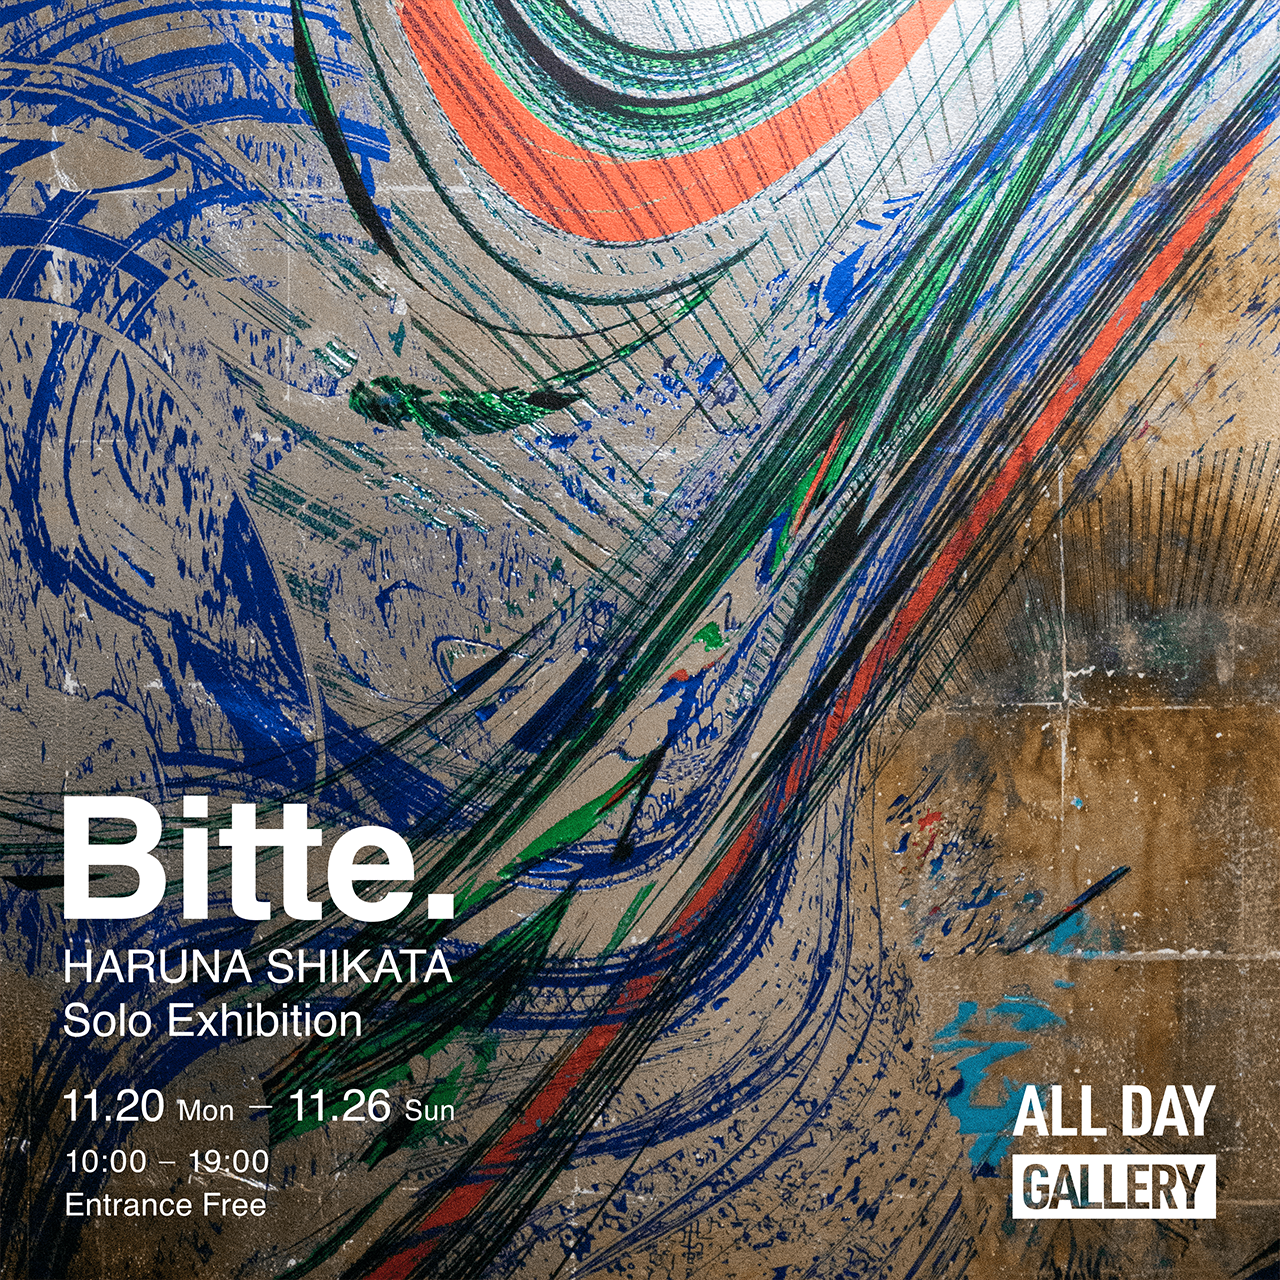 HARUNA SHIKATA Solo Exhibition”Bitte.”